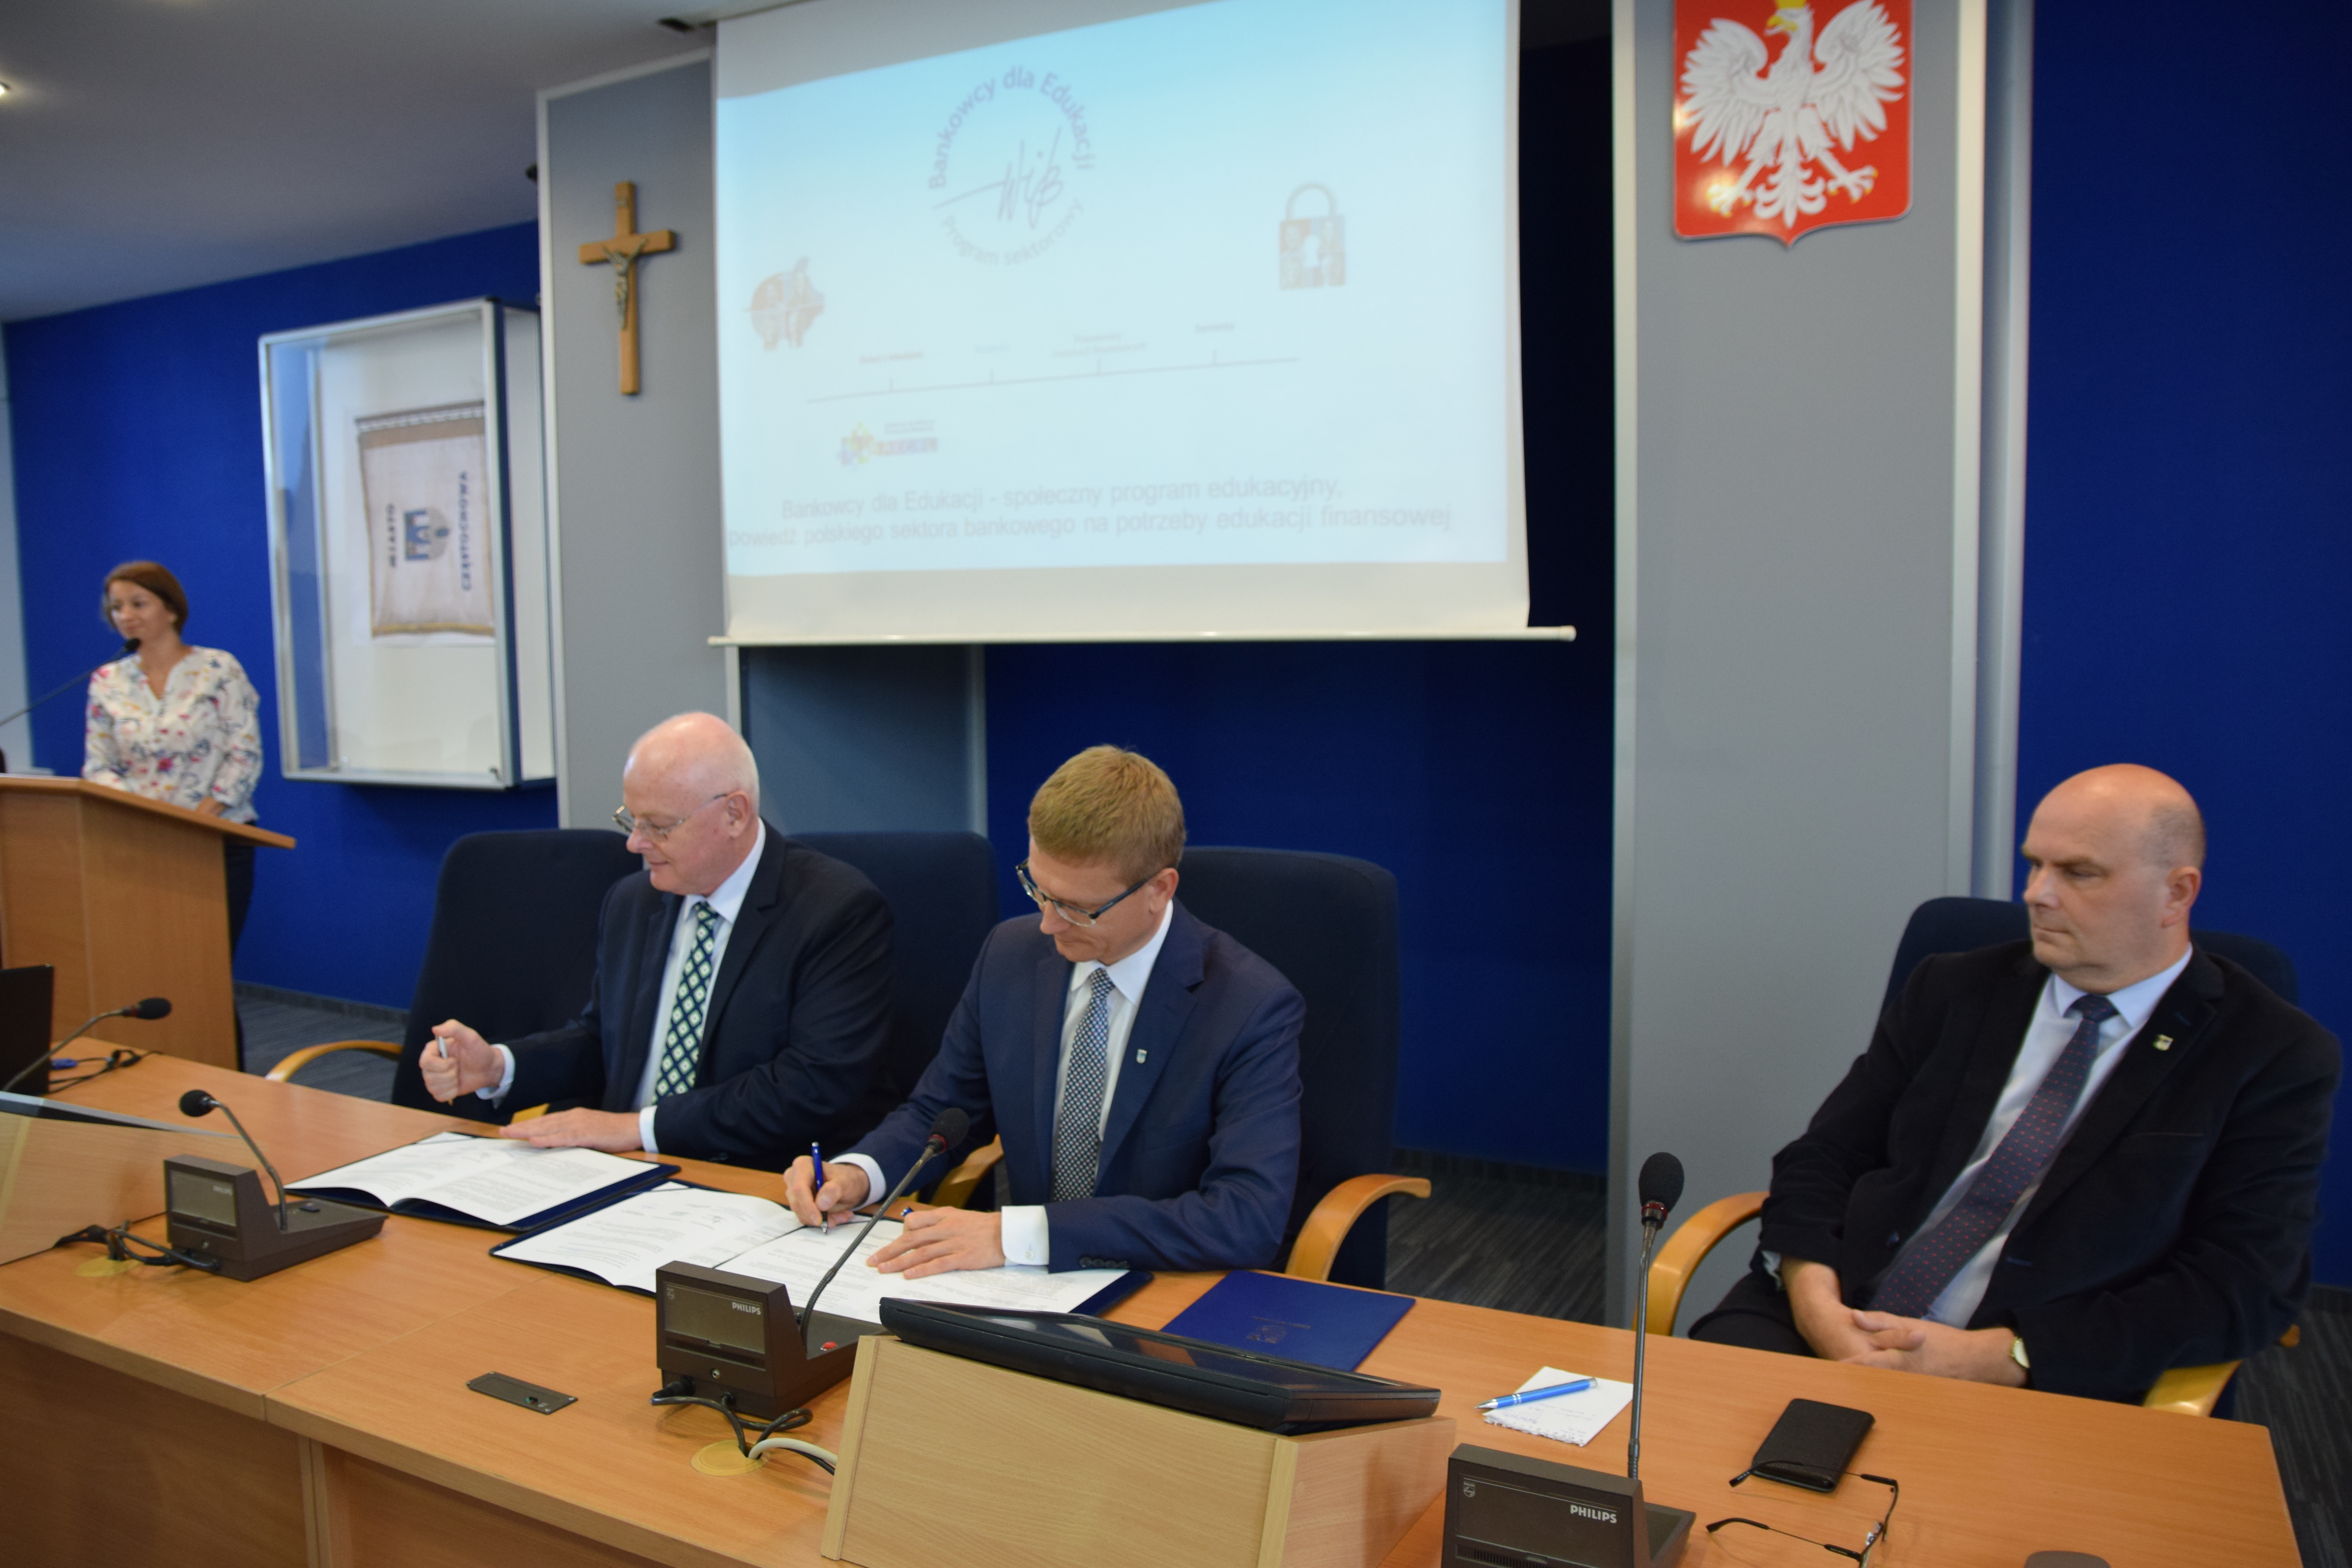 Podpisanie porozumienia BdE Częstochowa